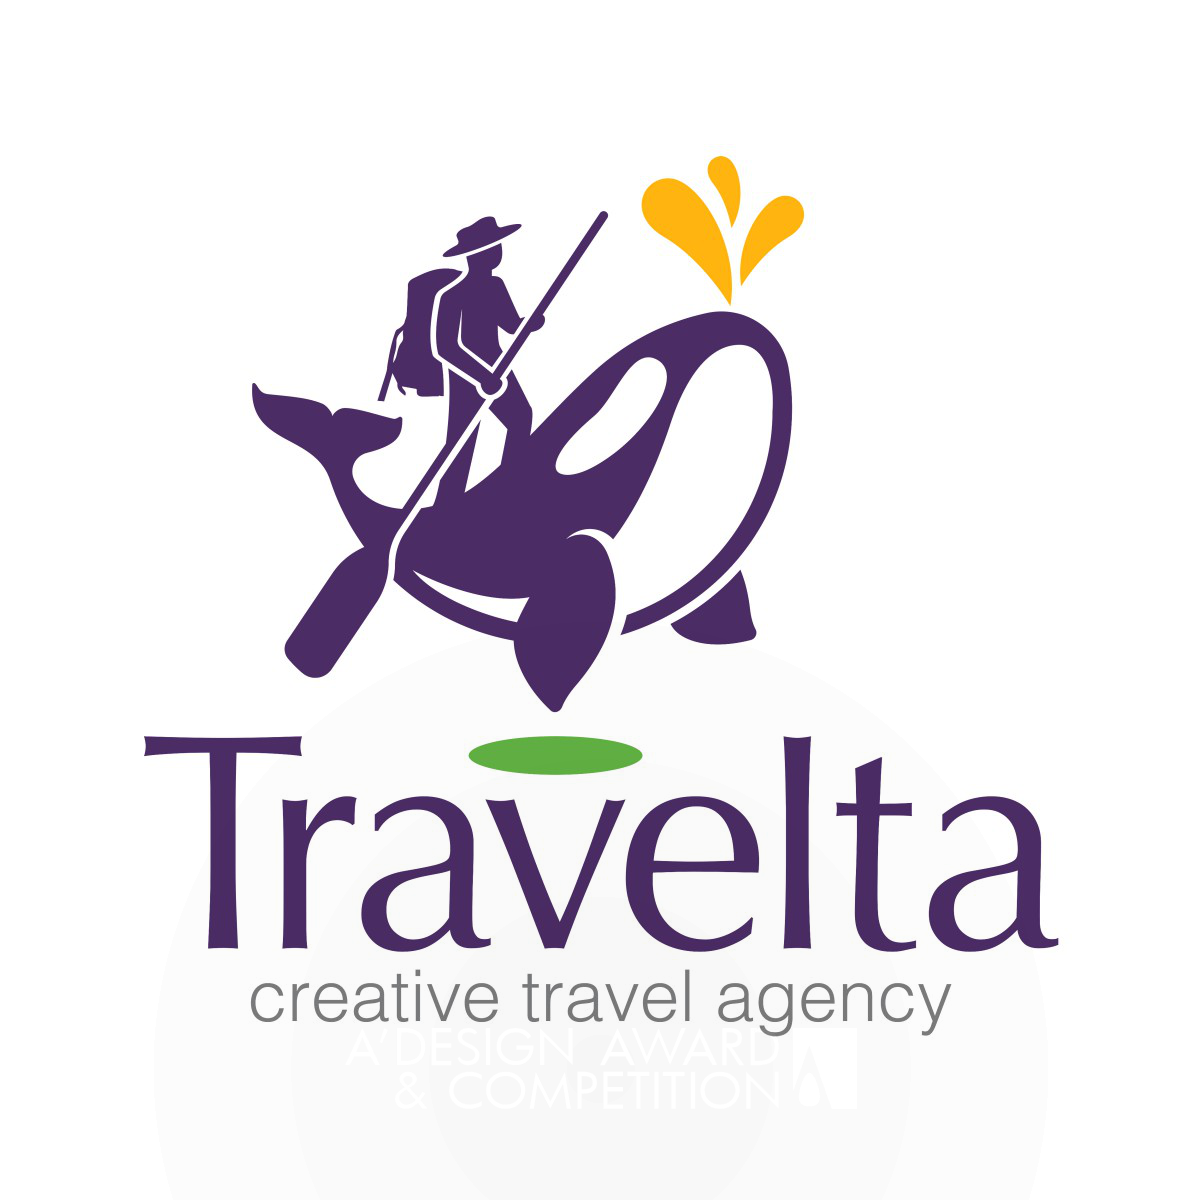 Travelta Brand Design by Wallrus Design Studio